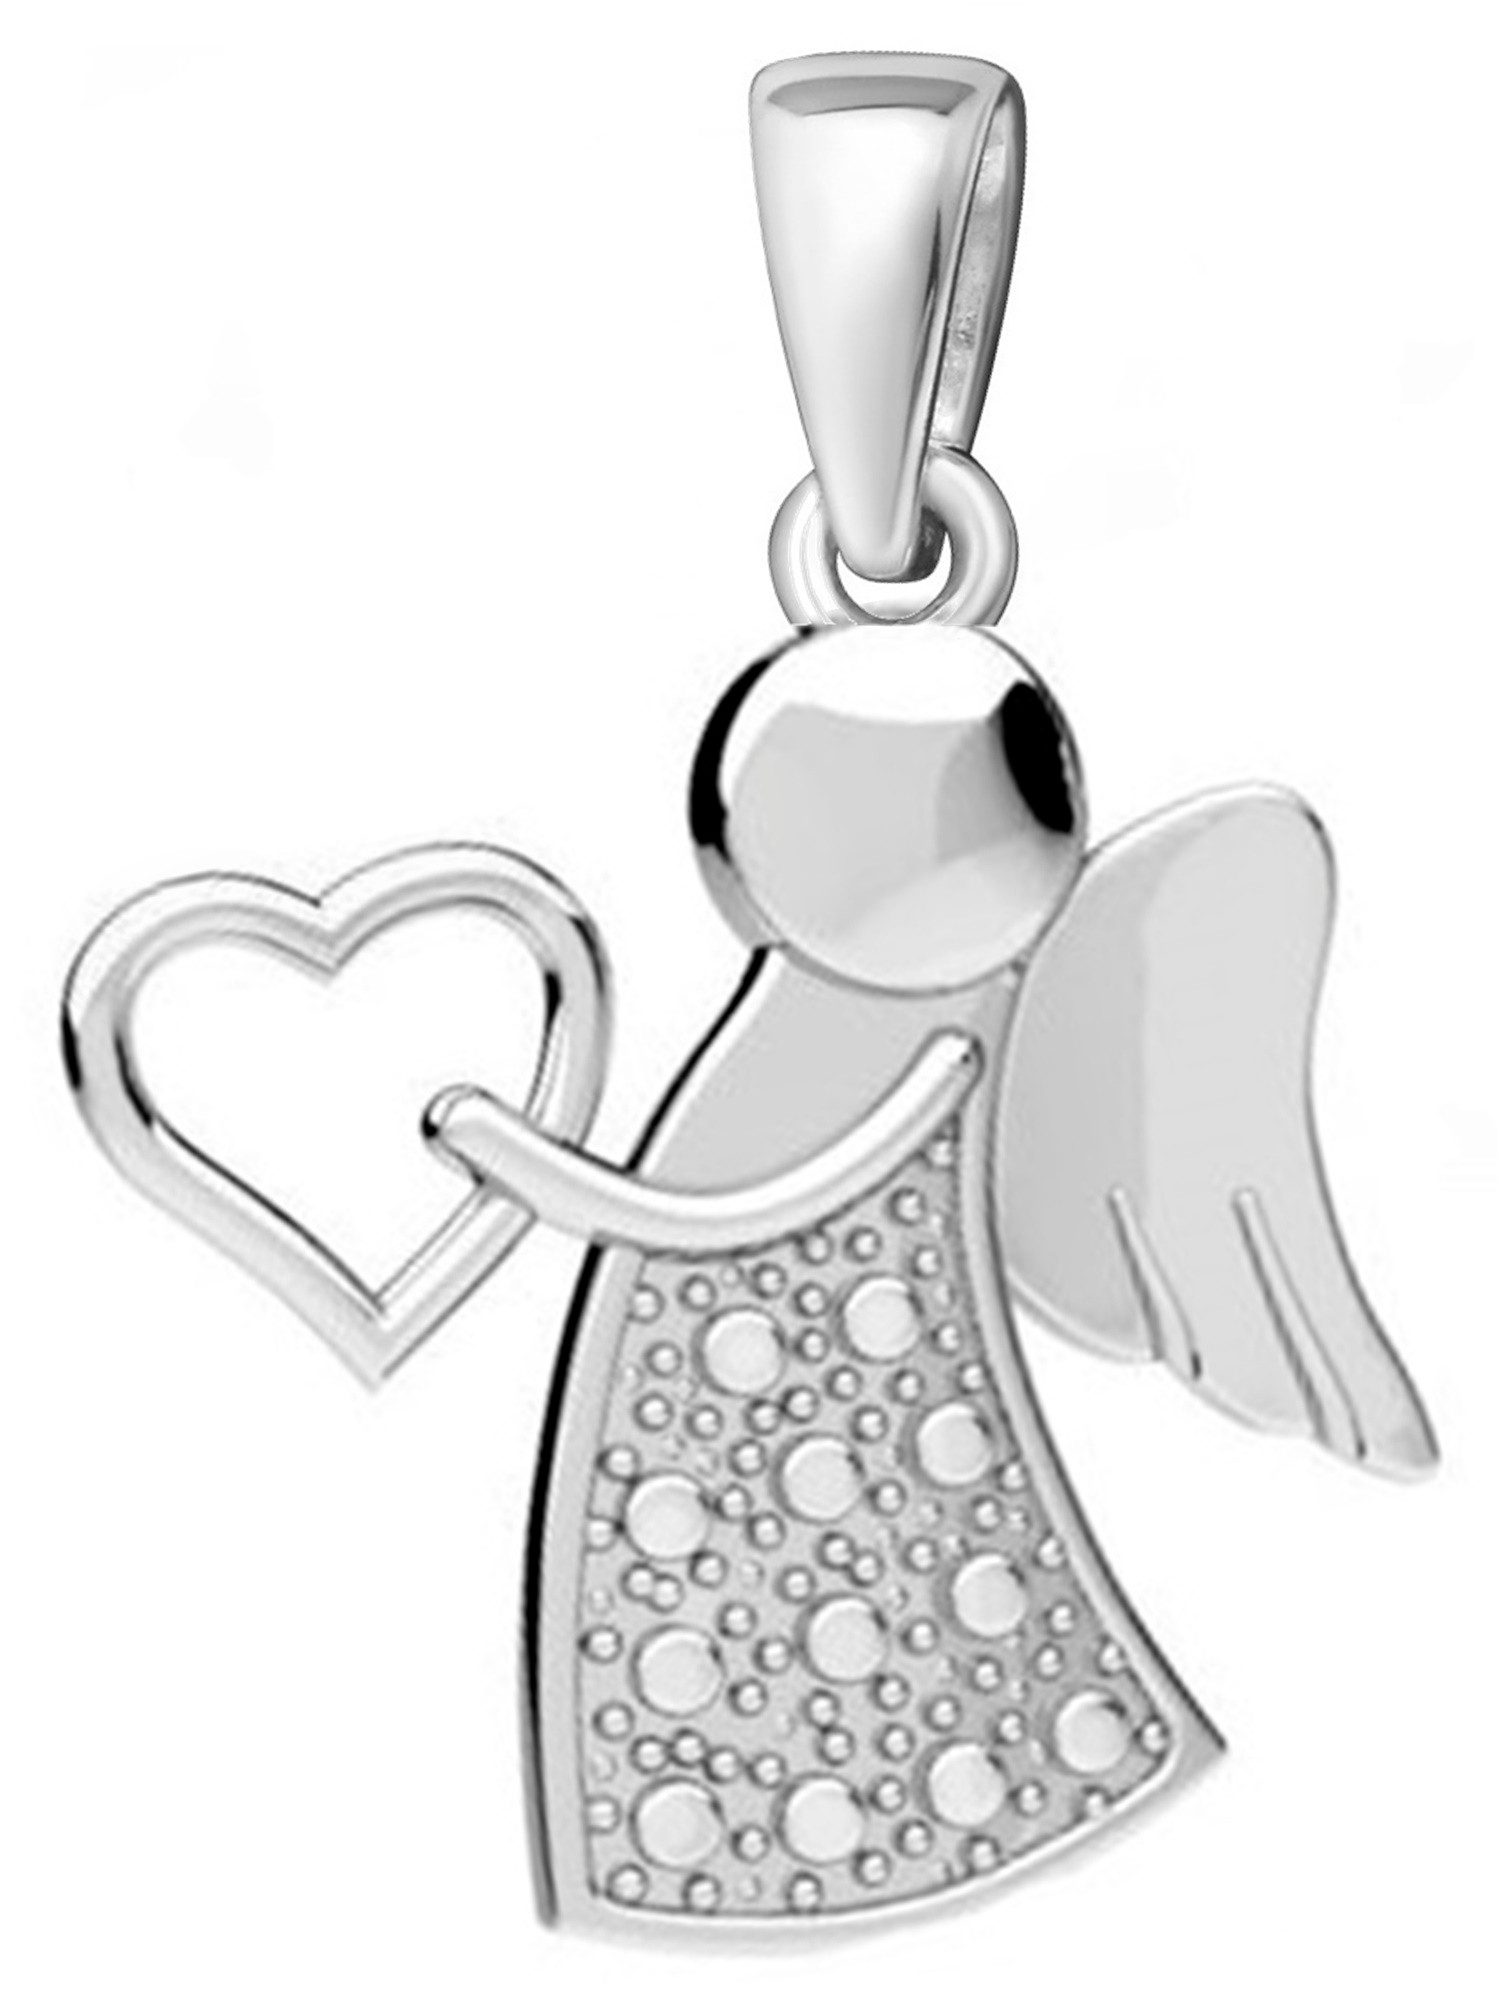 Goldene Hufeisen Engelanhänger Engel Anhänger für Halskette aus 925 Sterling Silber Kettenanhänger (1 Stück, inkl. Etui)